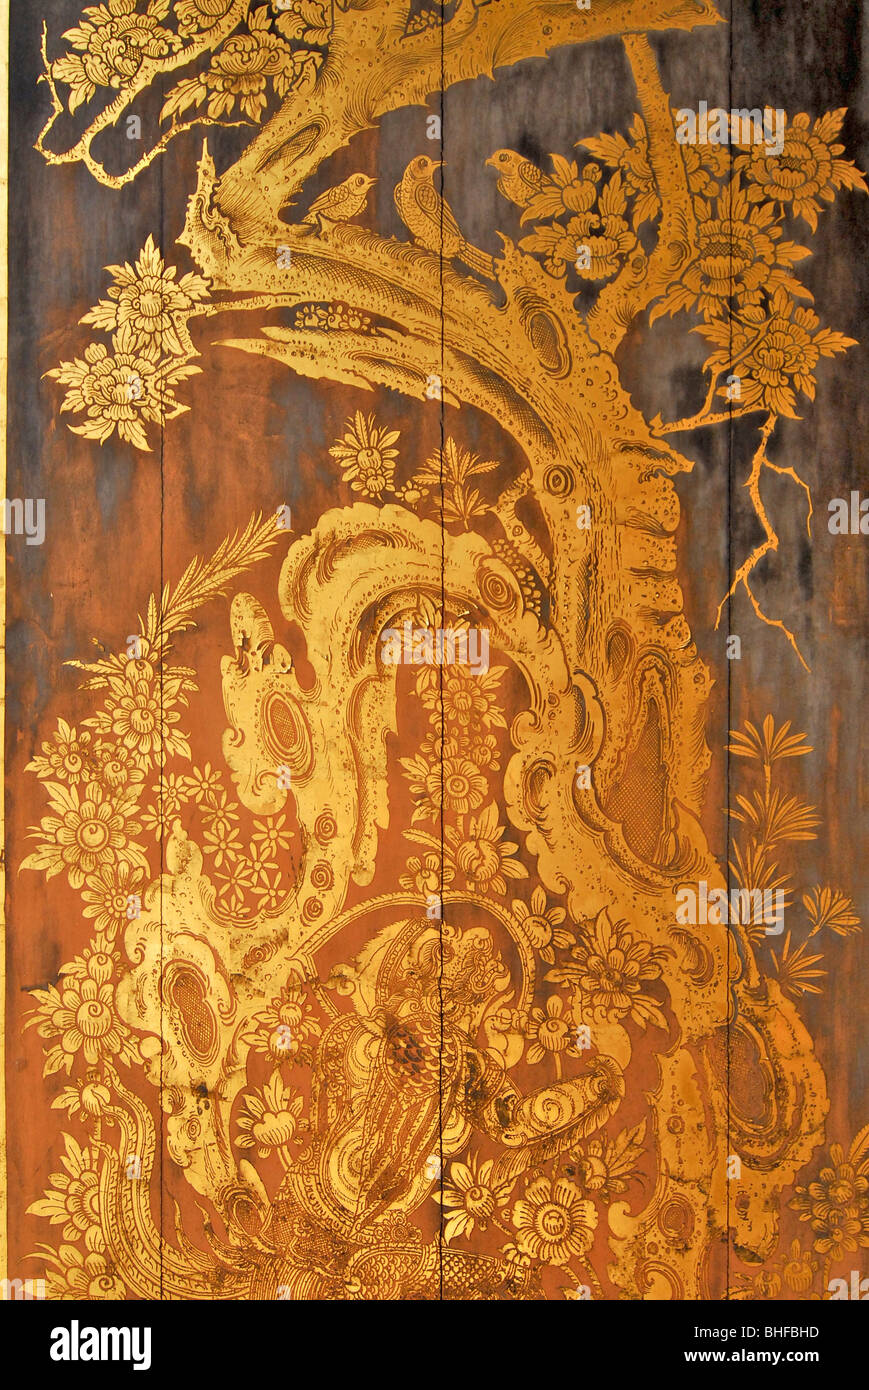 La peinture d'or sur des volets de bois Musée national de Bangkok, Wang Na Palast, Thailande, Asie Banque D'Images